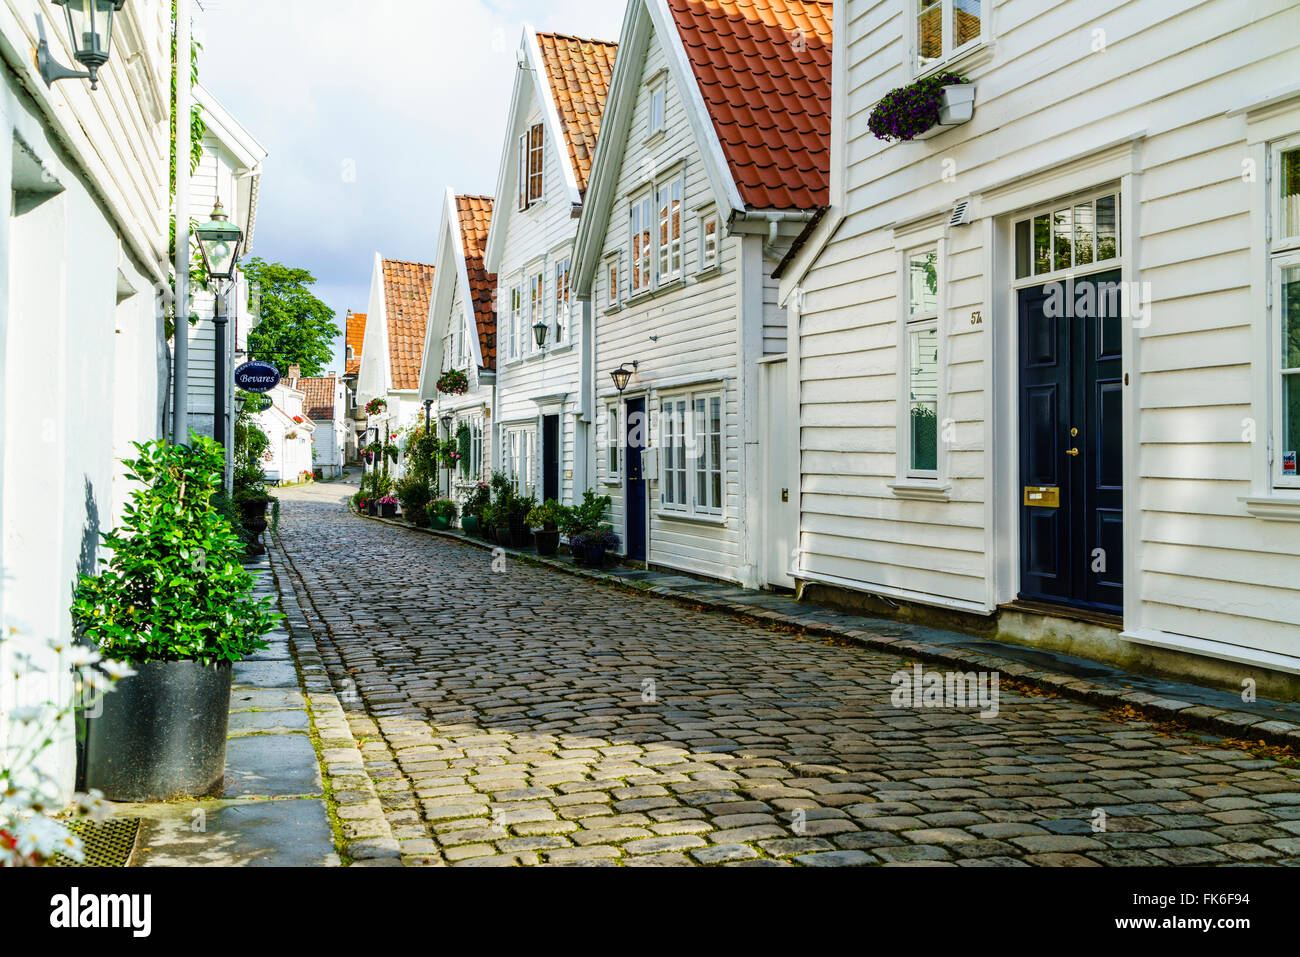 Rizière (composée d'environ 250 bâtiments du début du 18e siècle, essentiellement des petits cottages blancs, Stavanger, Norvège, Rotaland Banque D'Images